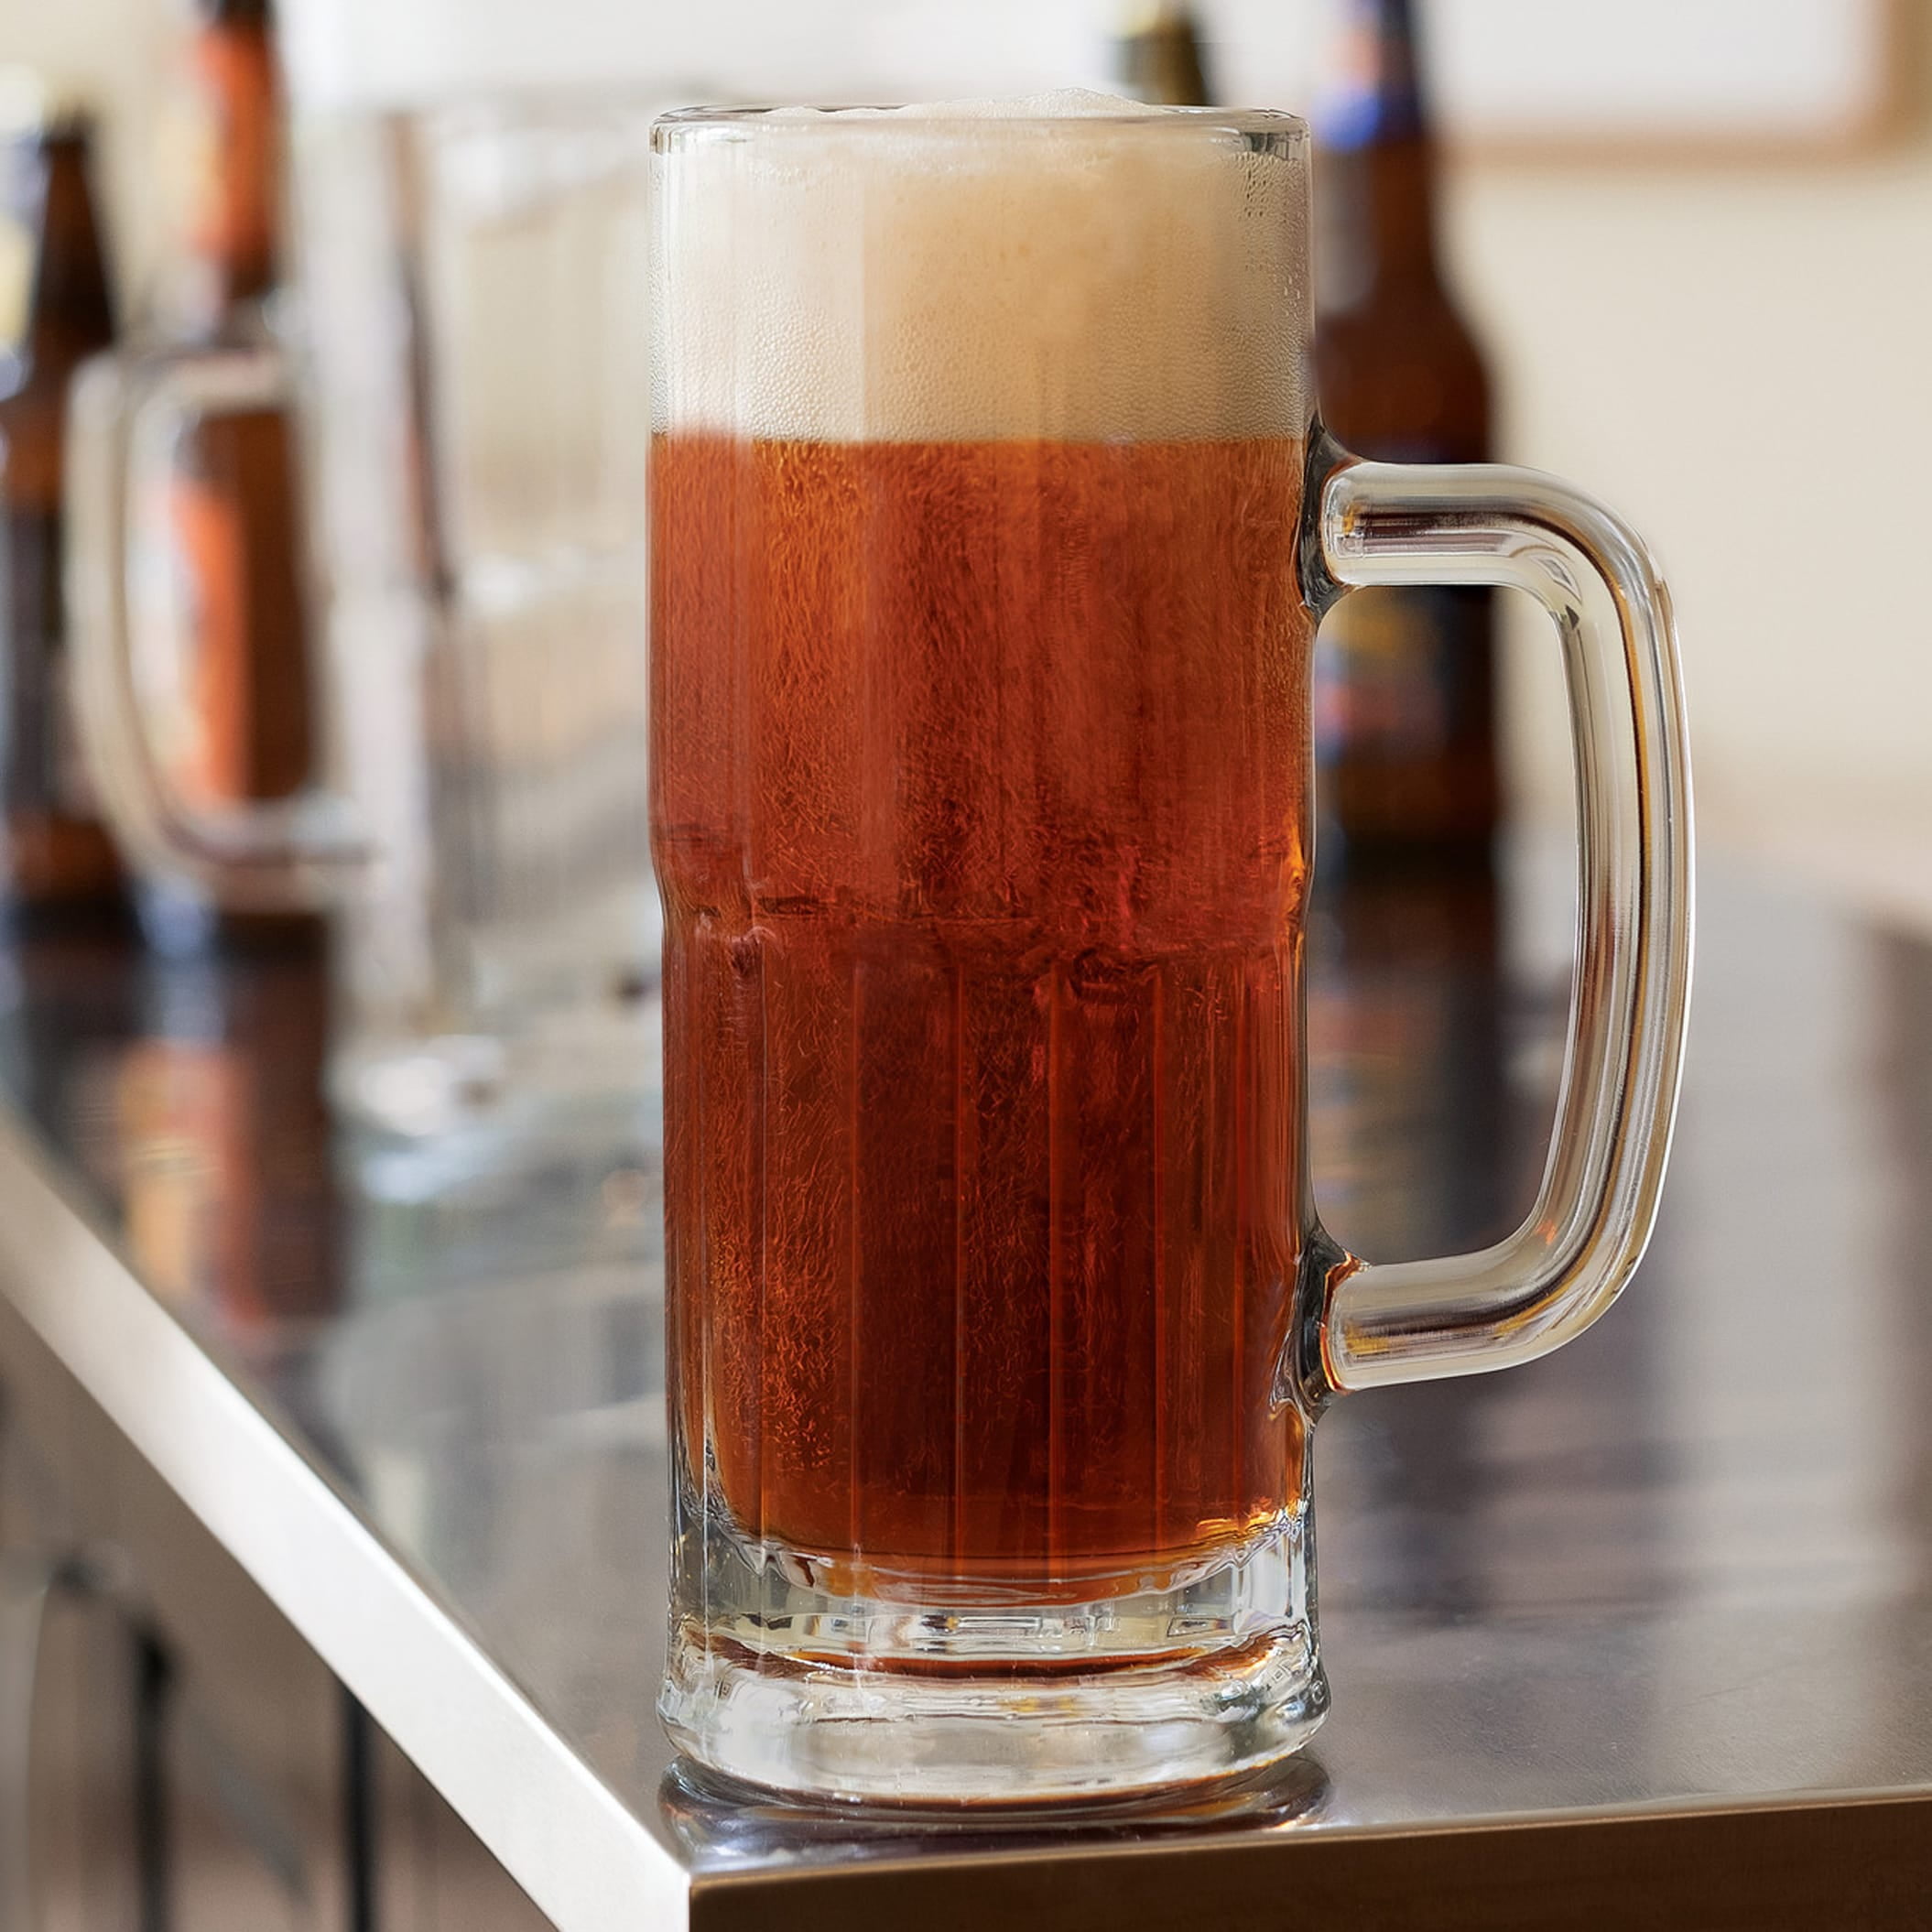 22 oz. Beer Mugs - Tall English Pub Glasses